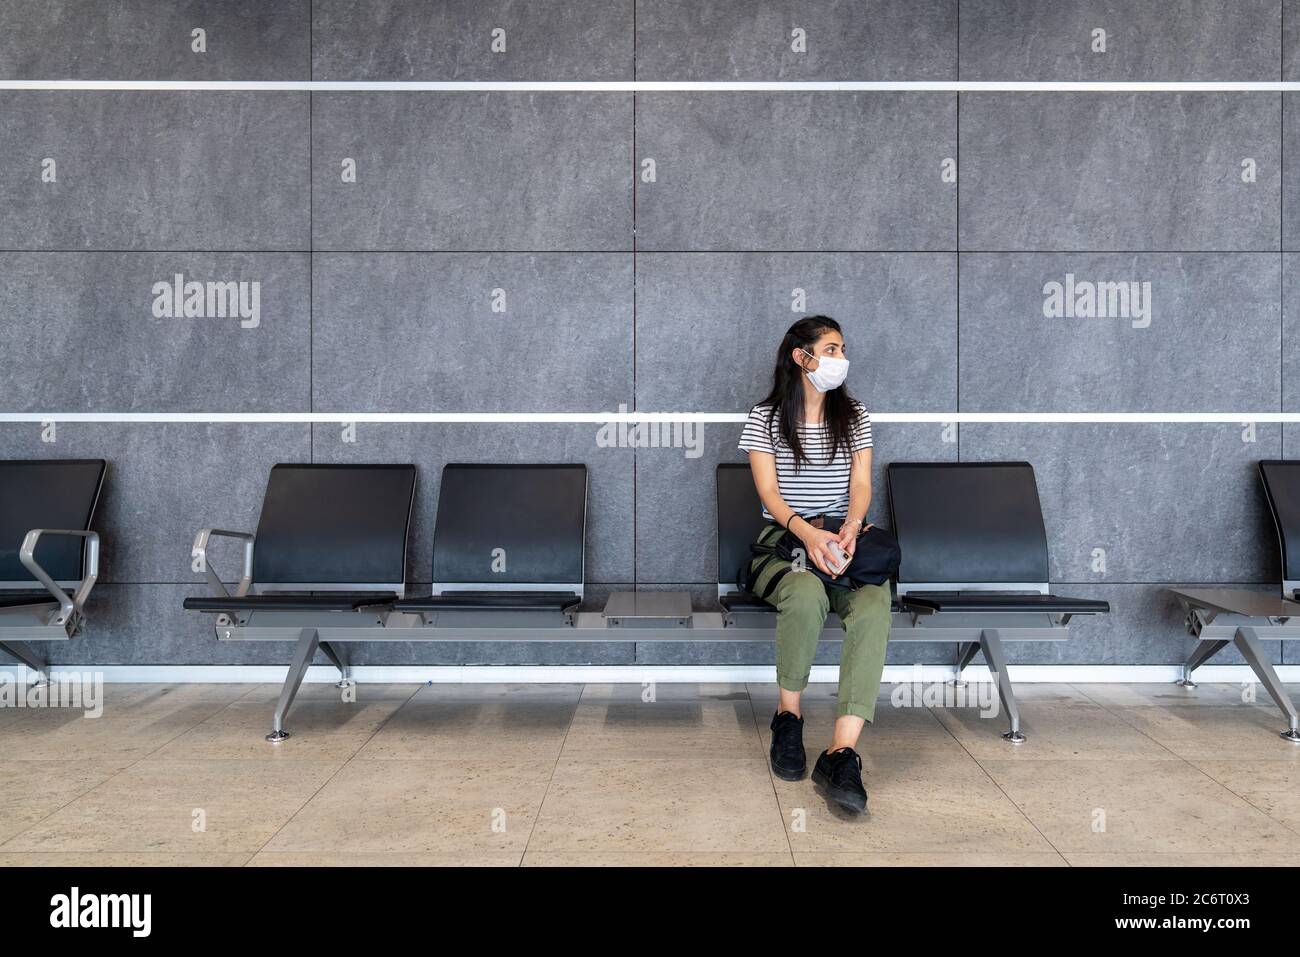 Junge Frau mit Schutzmaske sitzt in einer Wartehalle und schaut sich den Flughafen an. Corona Virus bricht aus. Hochwertige Fotos Stockfoto